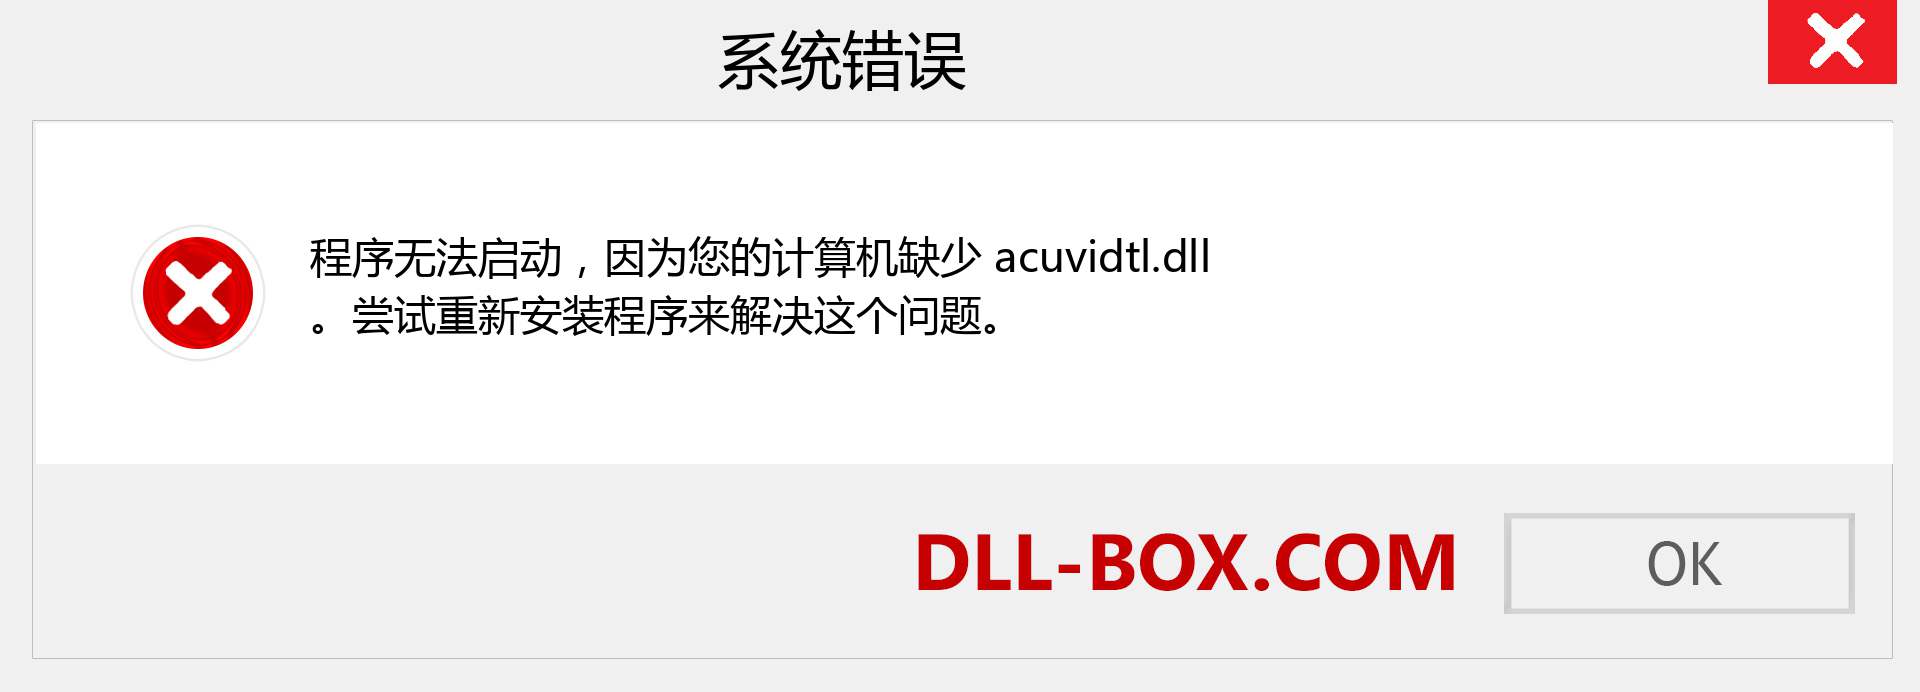 acuvidtl.dll 文件丢失？。 适用于 Windows 7、8、10 的下载 - 修复 Windows、照片、图像上的 acuvidtl dll 丢失错误